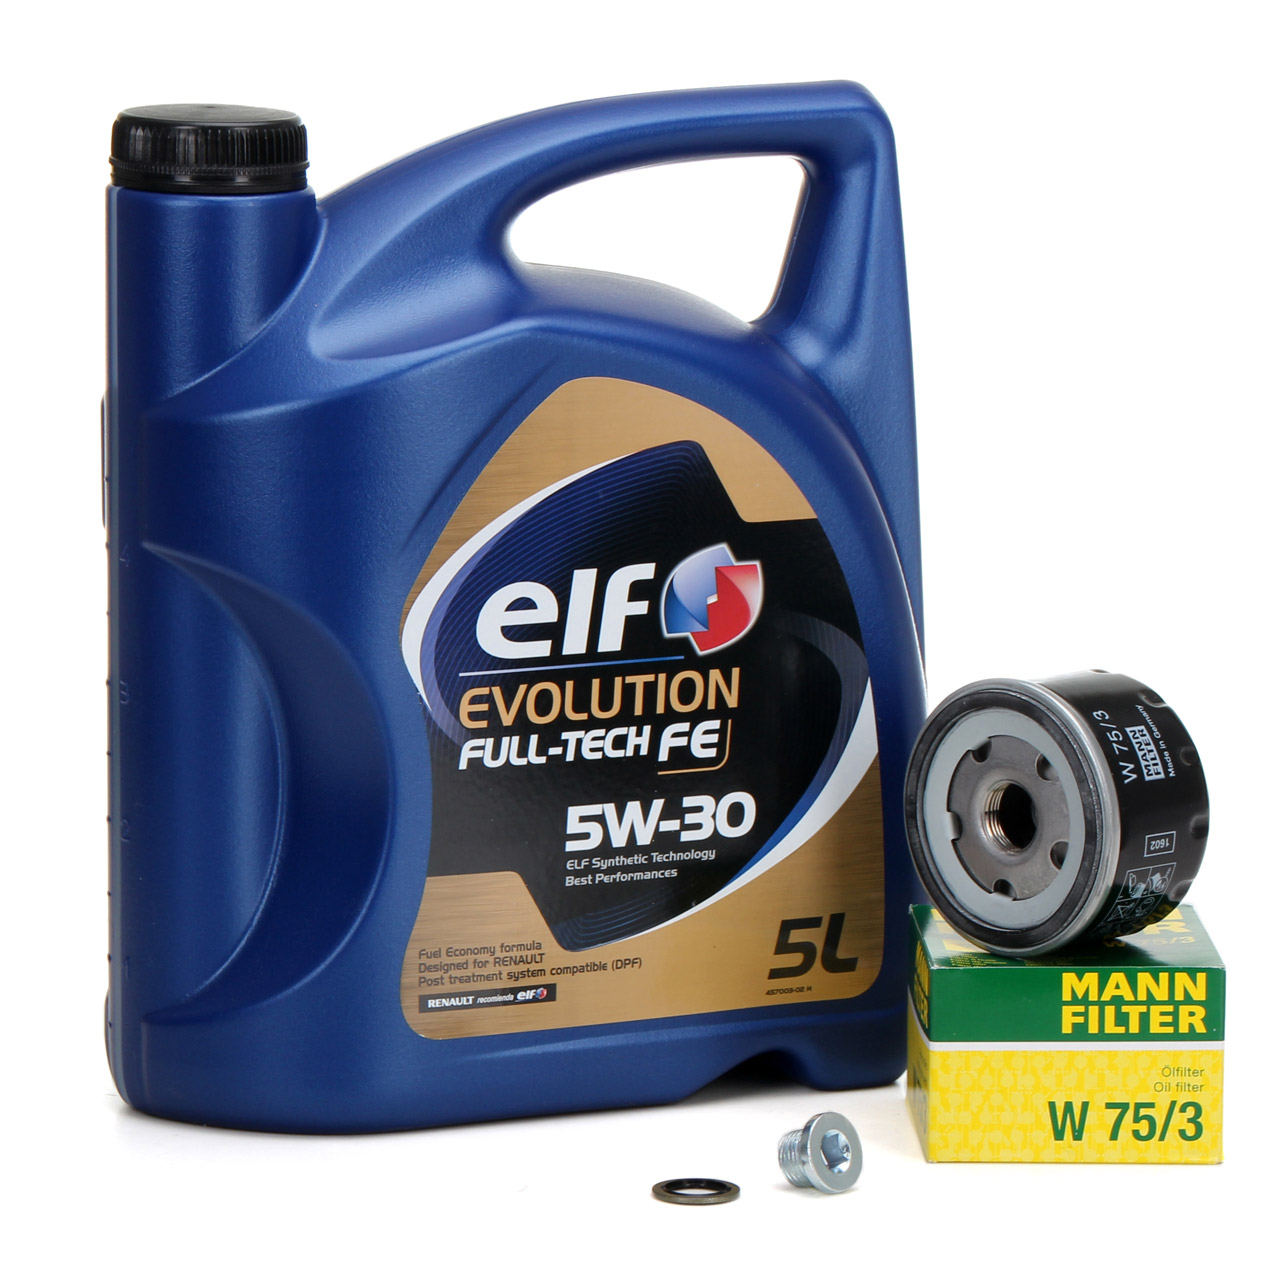 5L elf Evolution Full-Tech FE 5W-30 Motoröl + MANN W75/3 Ölfilter RENAULT Laguna Megane